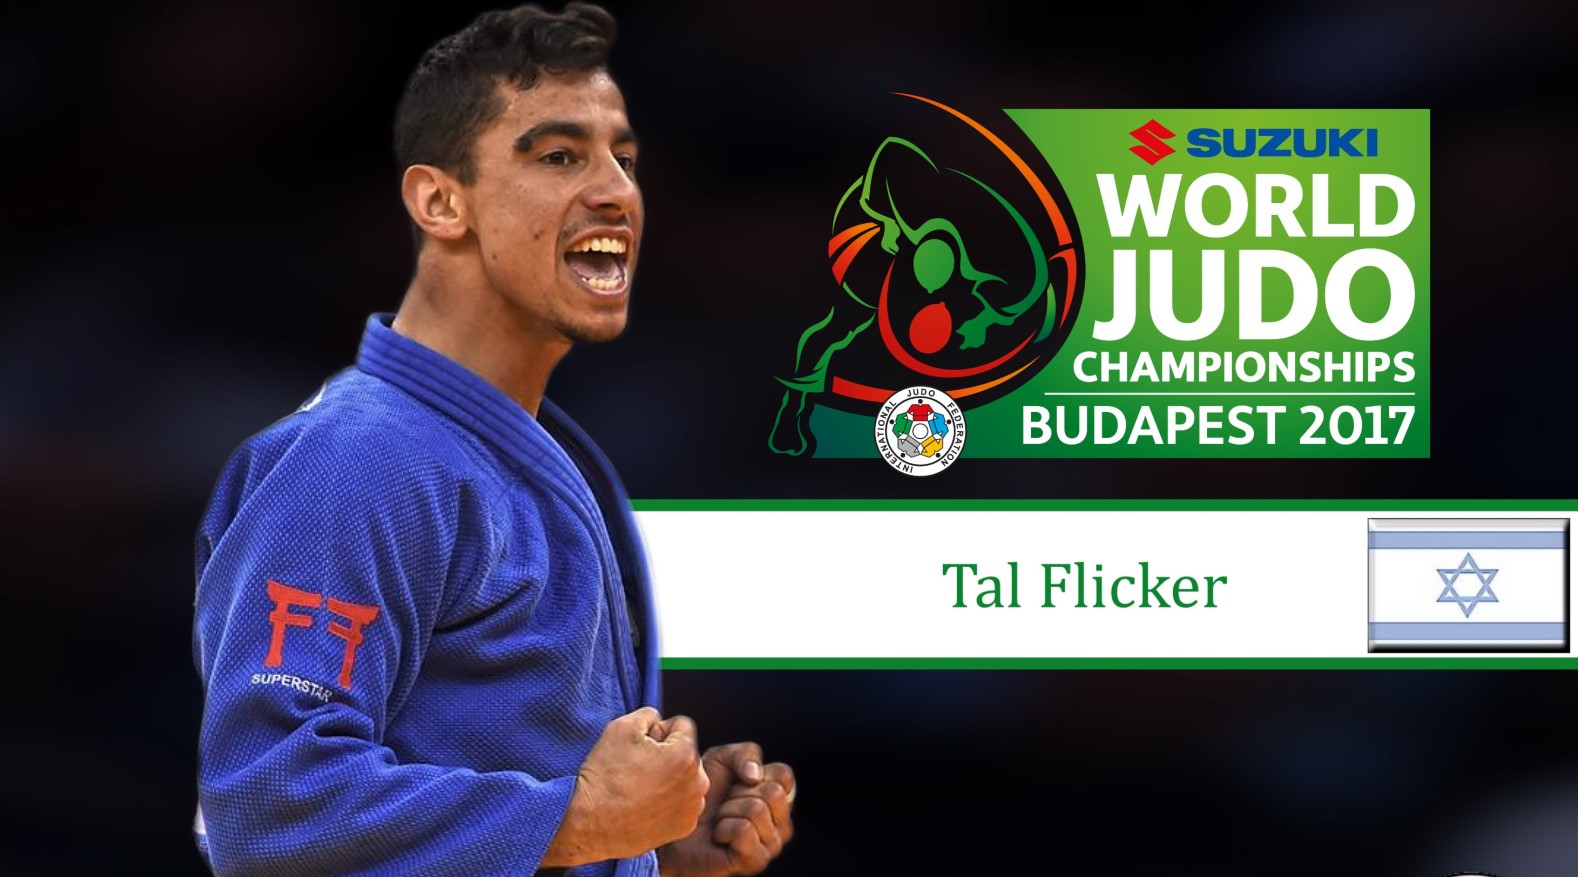 Israeli judoka Tal Flicker wins bronze medal at 2017 World Judo Championships. Photo via JudoInside.com